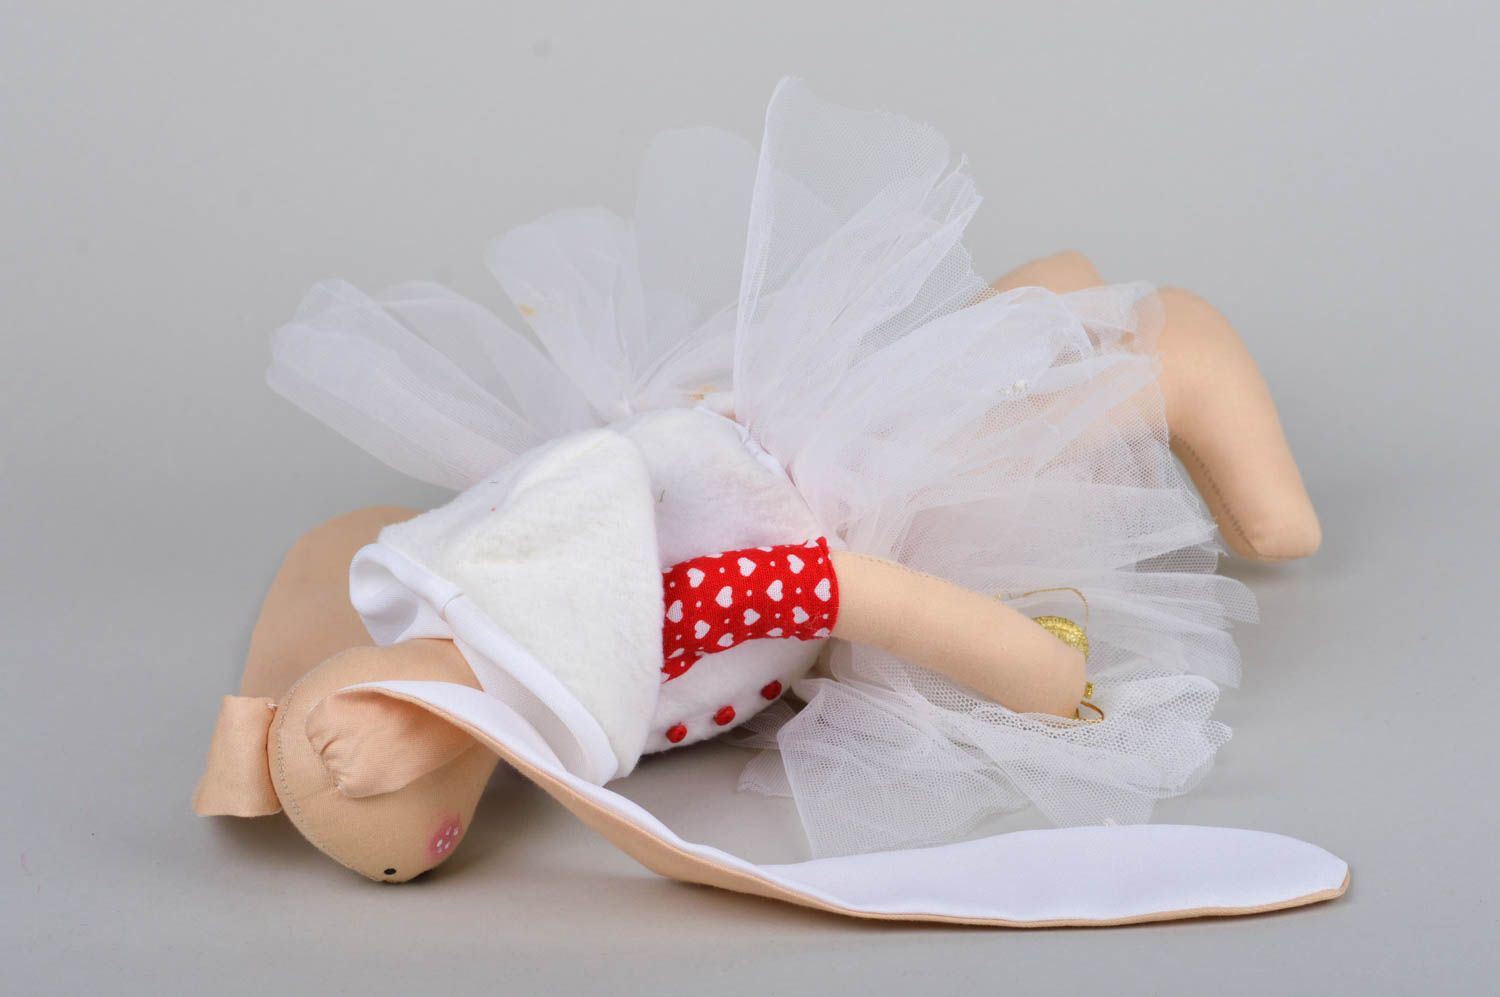 Spielzeug Hase handmade im Rock Haus Deko Geschenk für Kinder stilvoll festlich foto 5